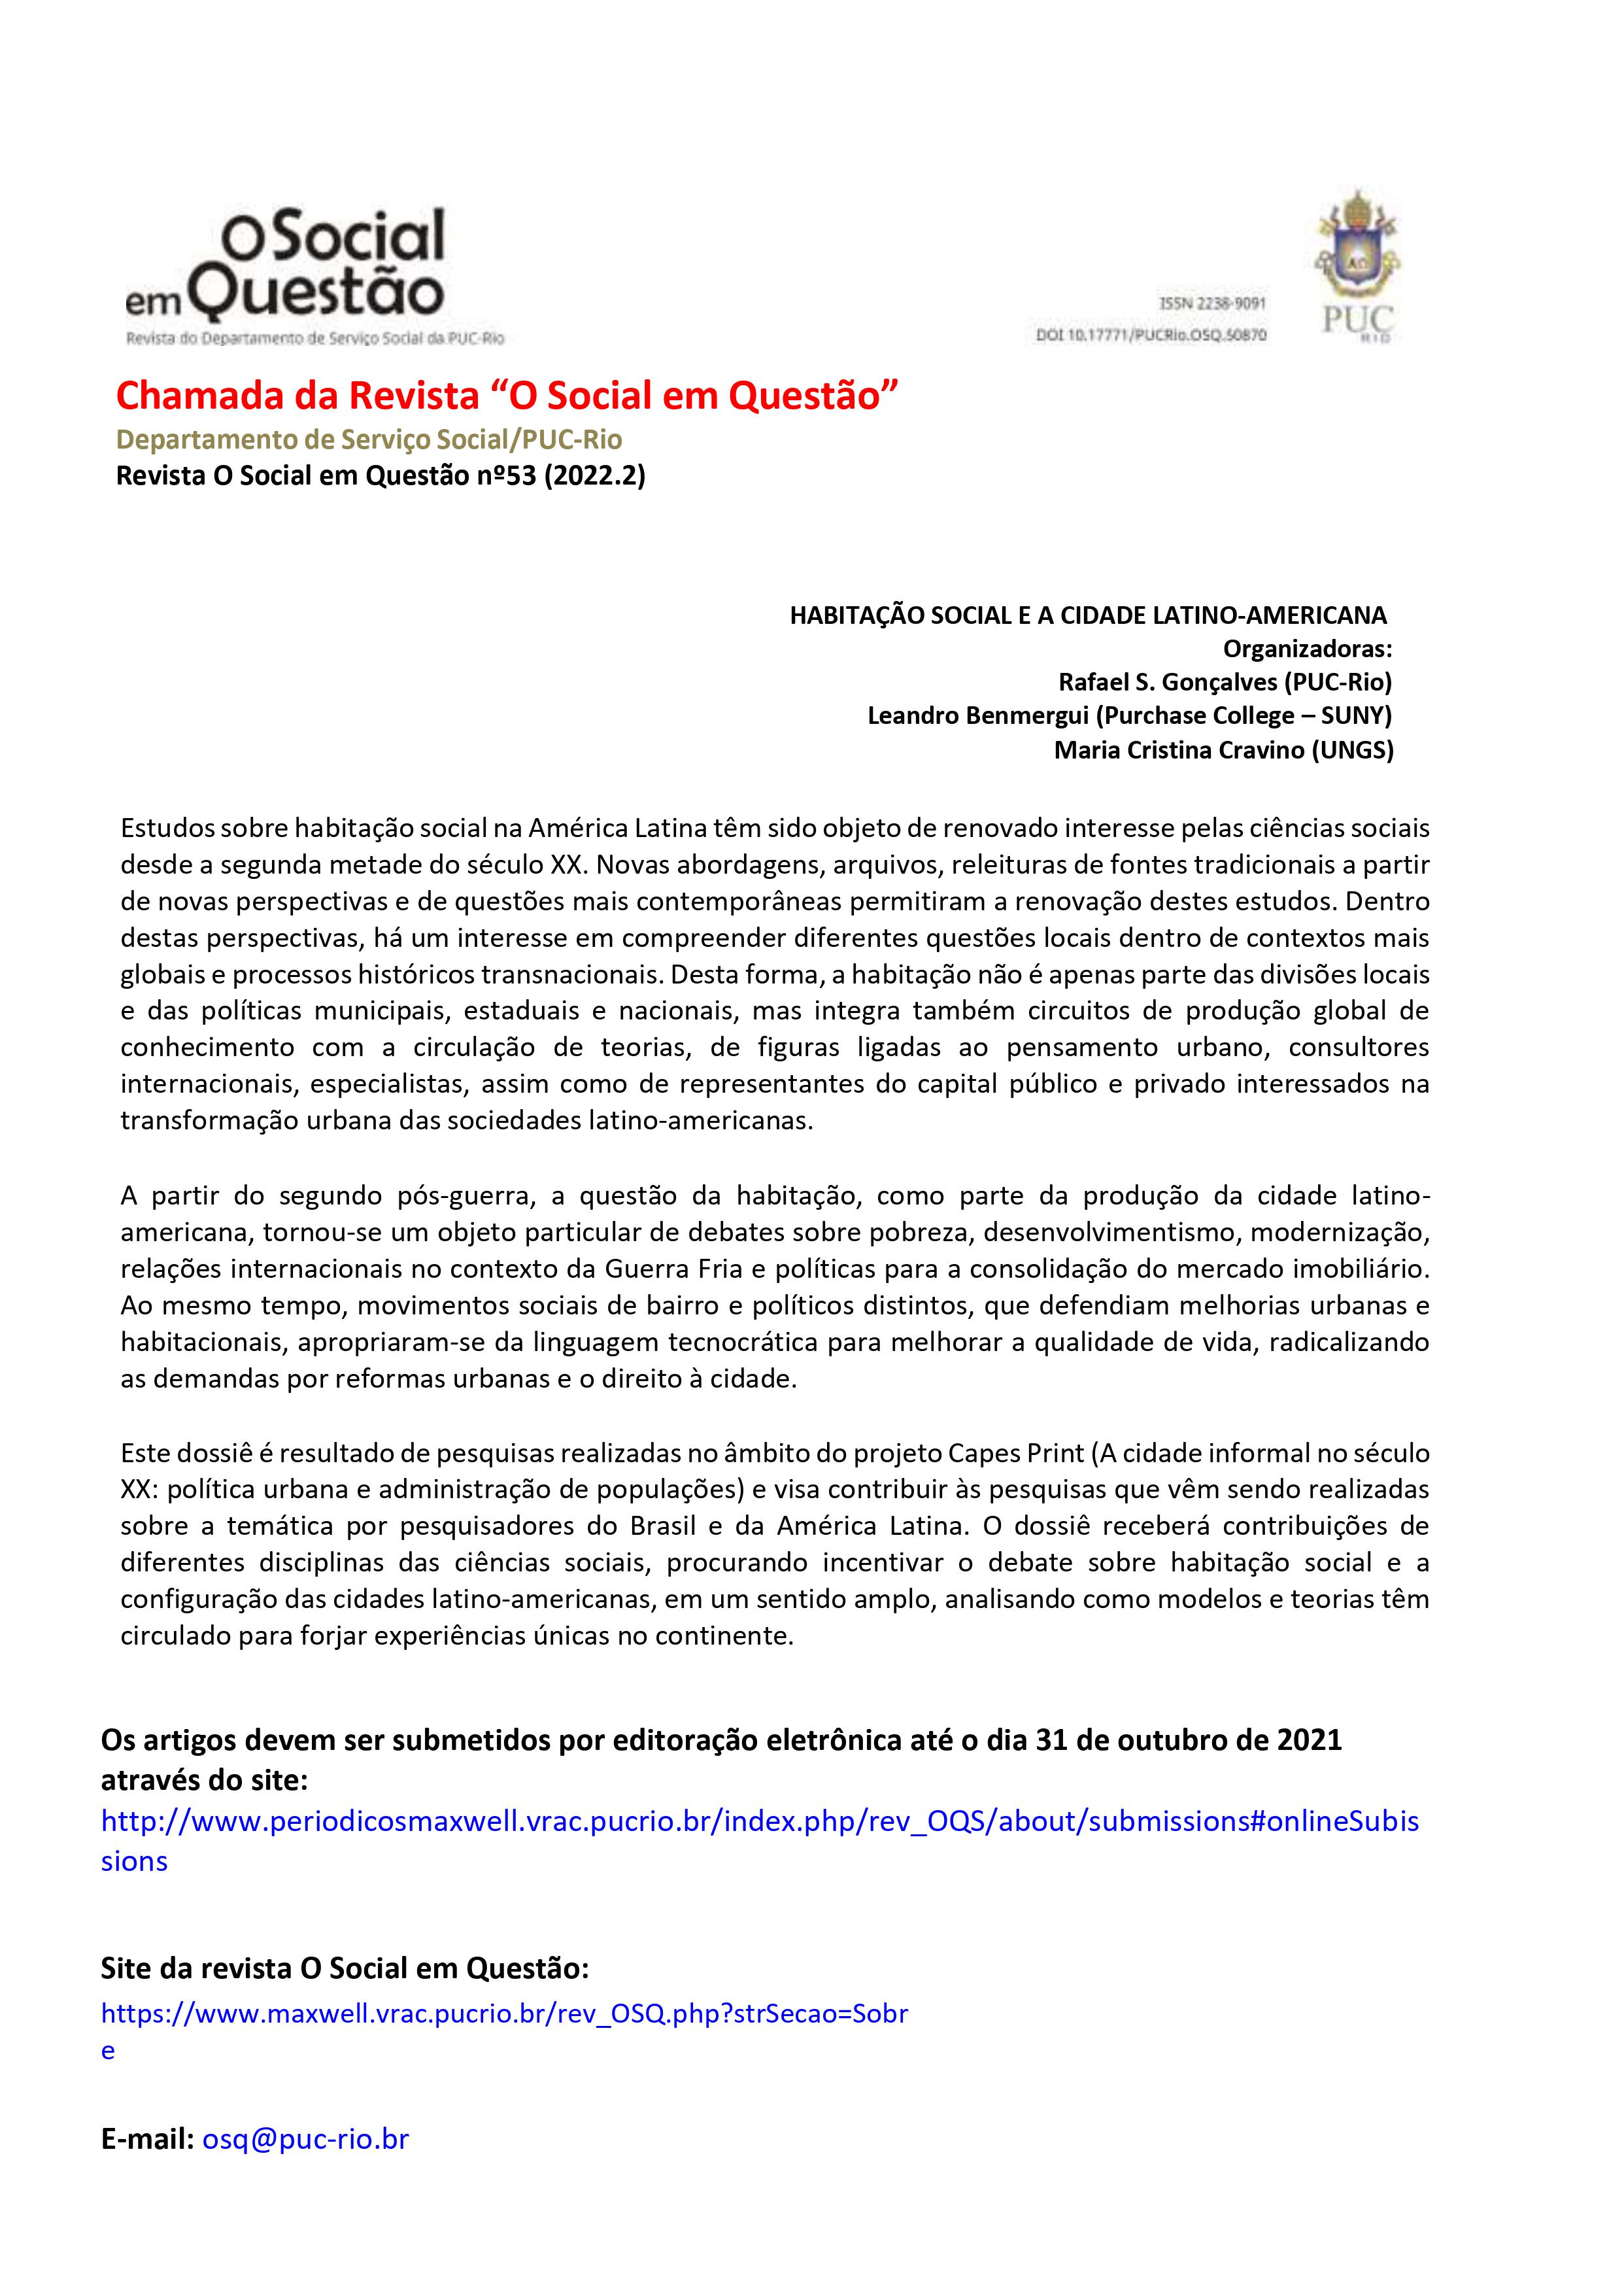 Chamada da Revista “O Social em Questão” nº53 (2022.2)